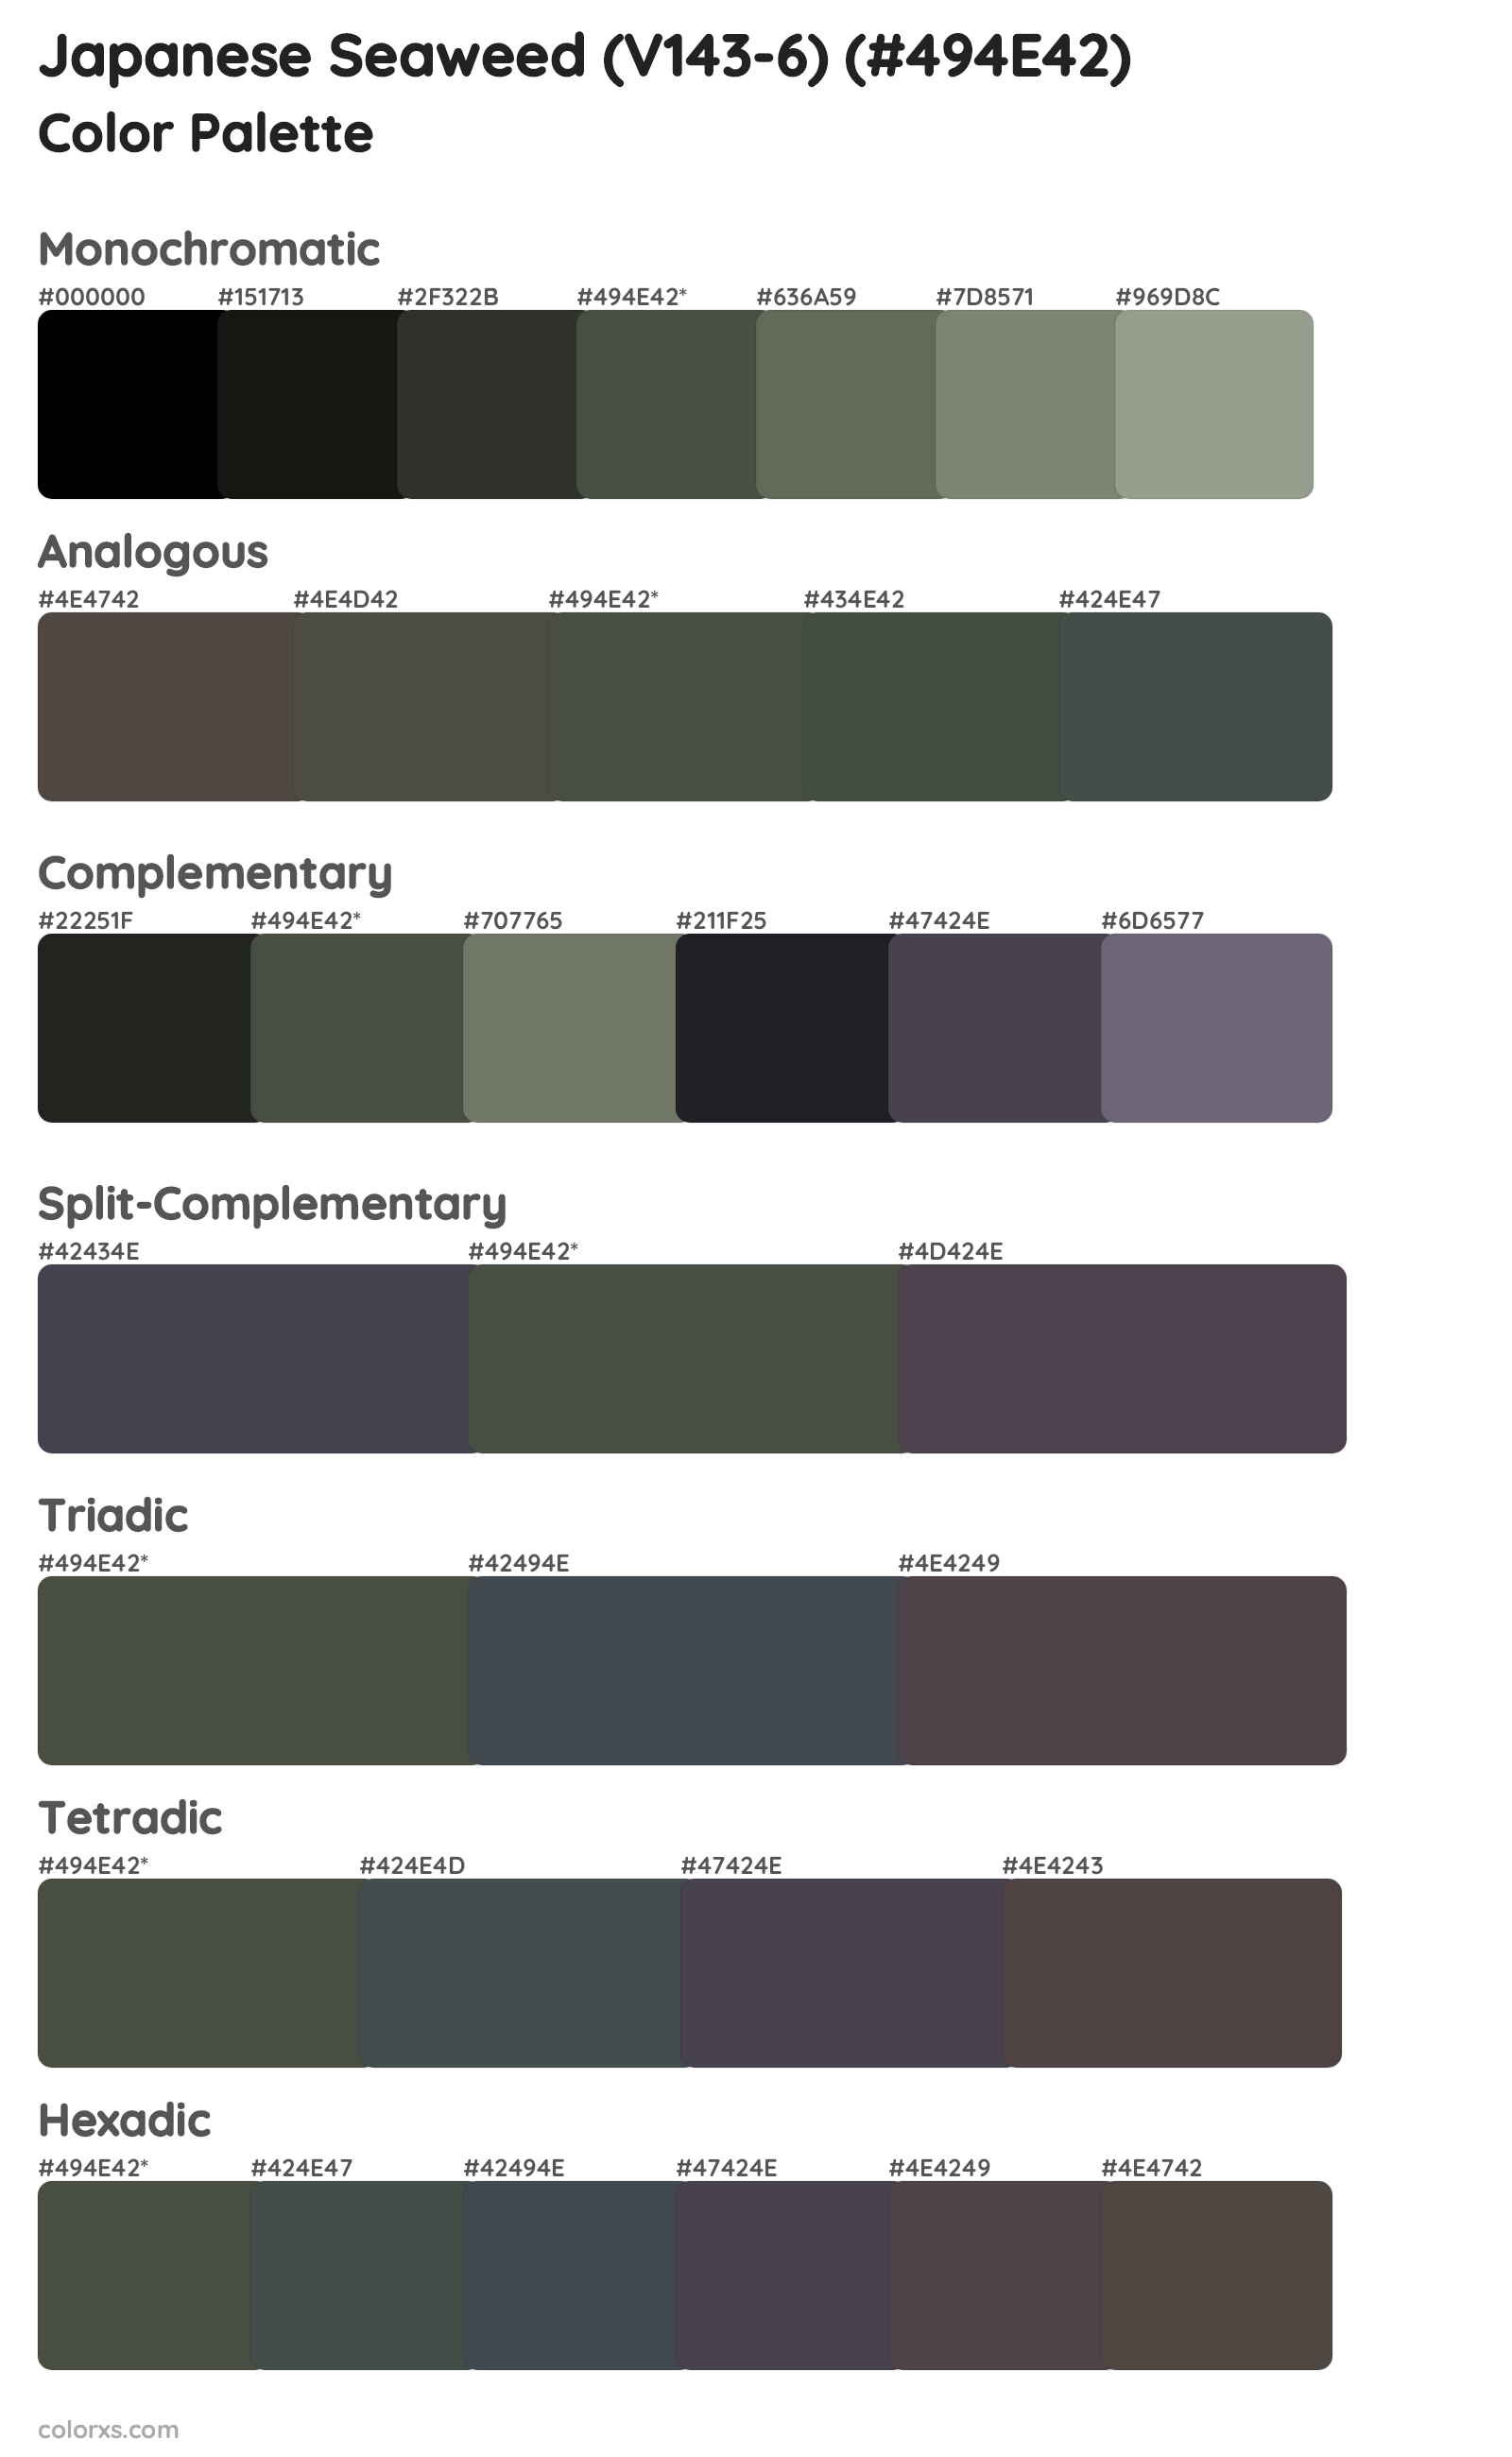 Japanese Seaweed (V143-6) Color Scheme Palettes